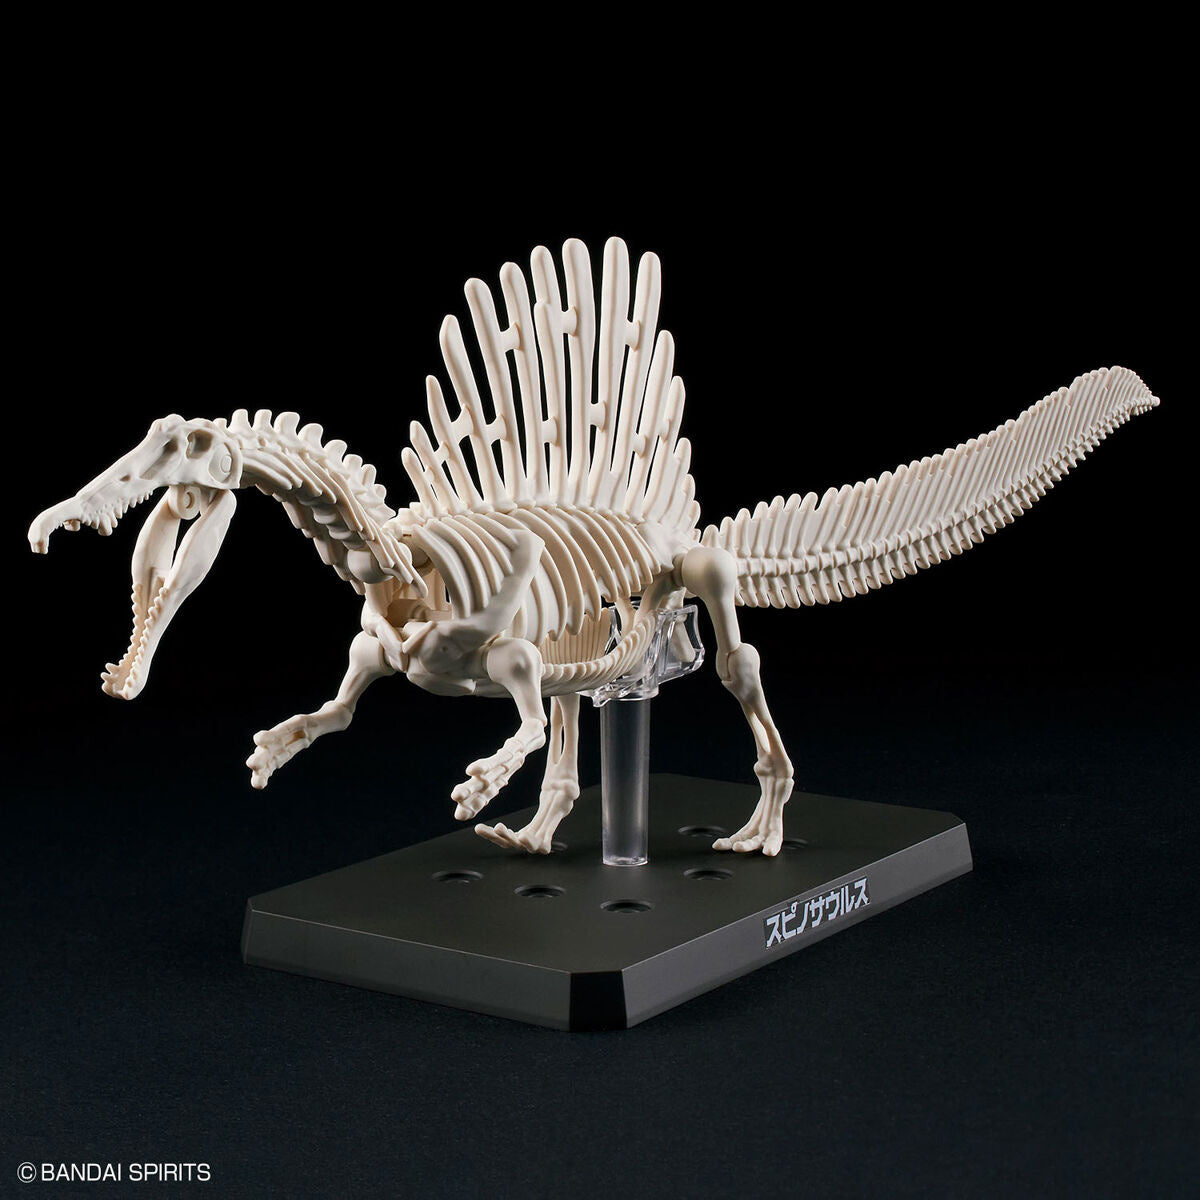 Plannosaurus - Spinosaurus